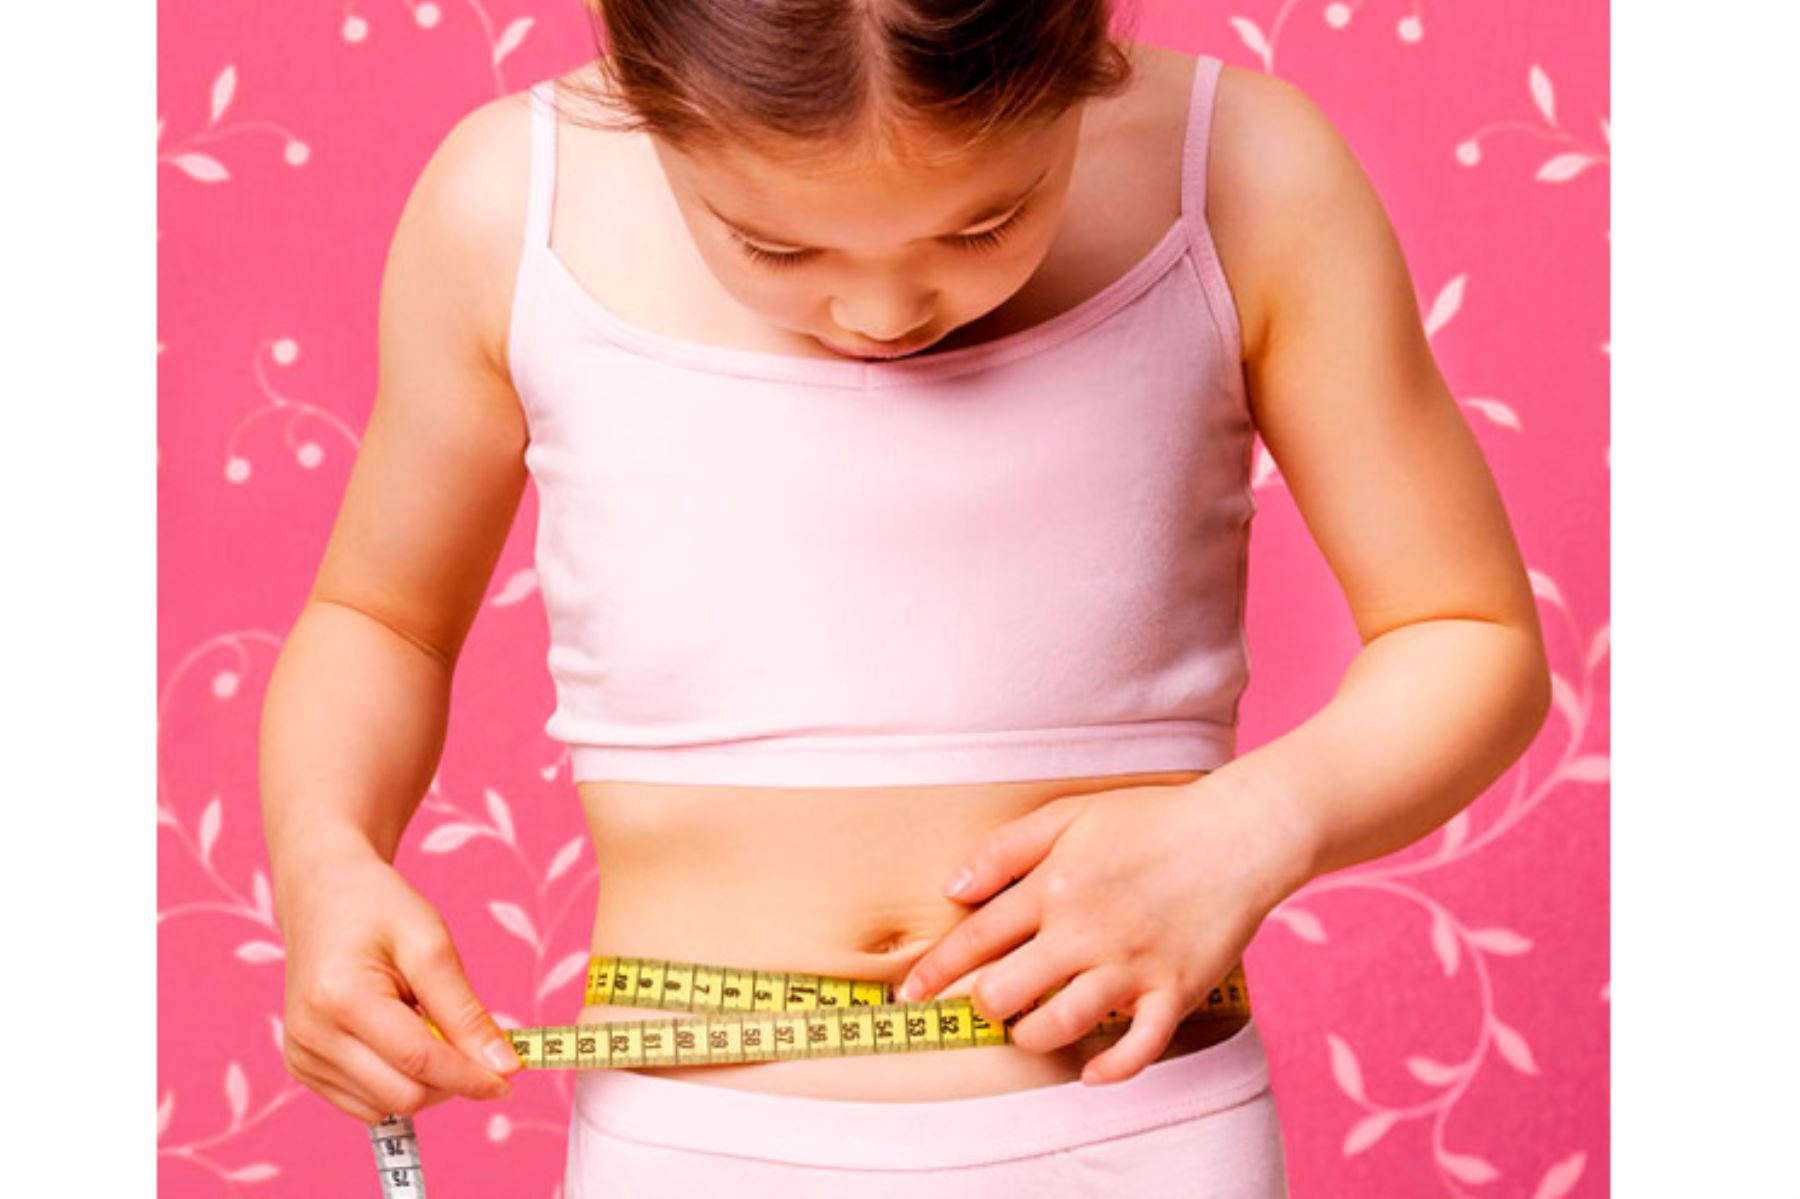 Cuidado con la anorexia infantil. Foto: Internet/medios/El Blog de tu bebé